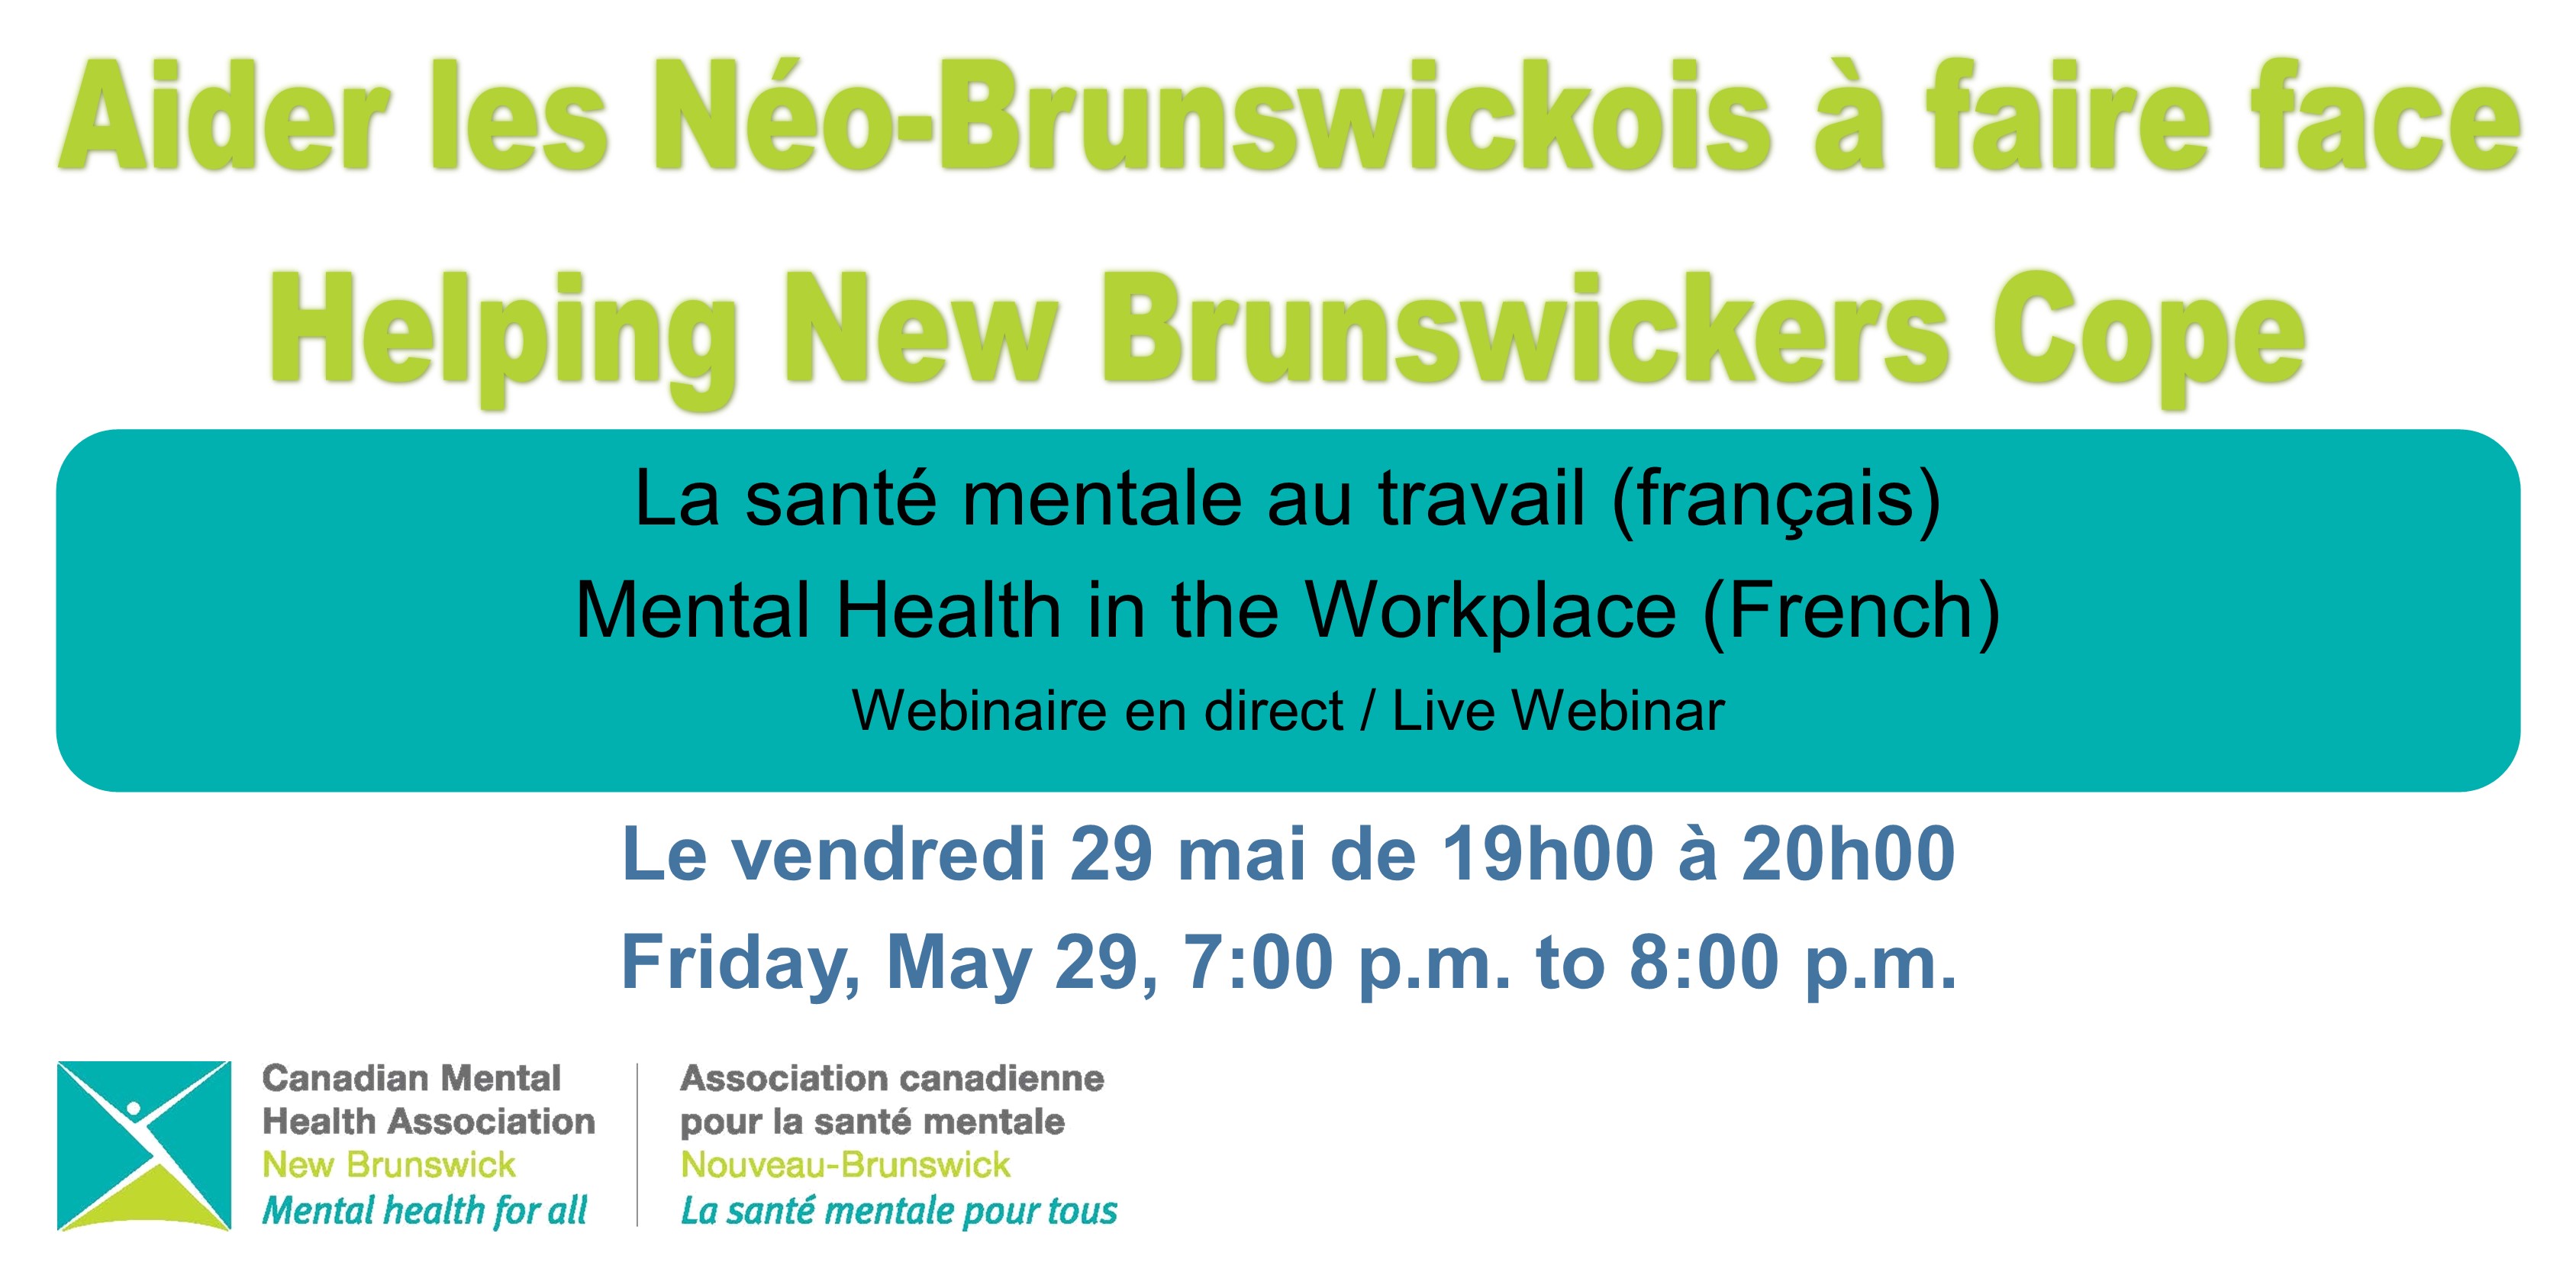 La santé mentale au travail (français) / Mental Health in the Workplace (French)